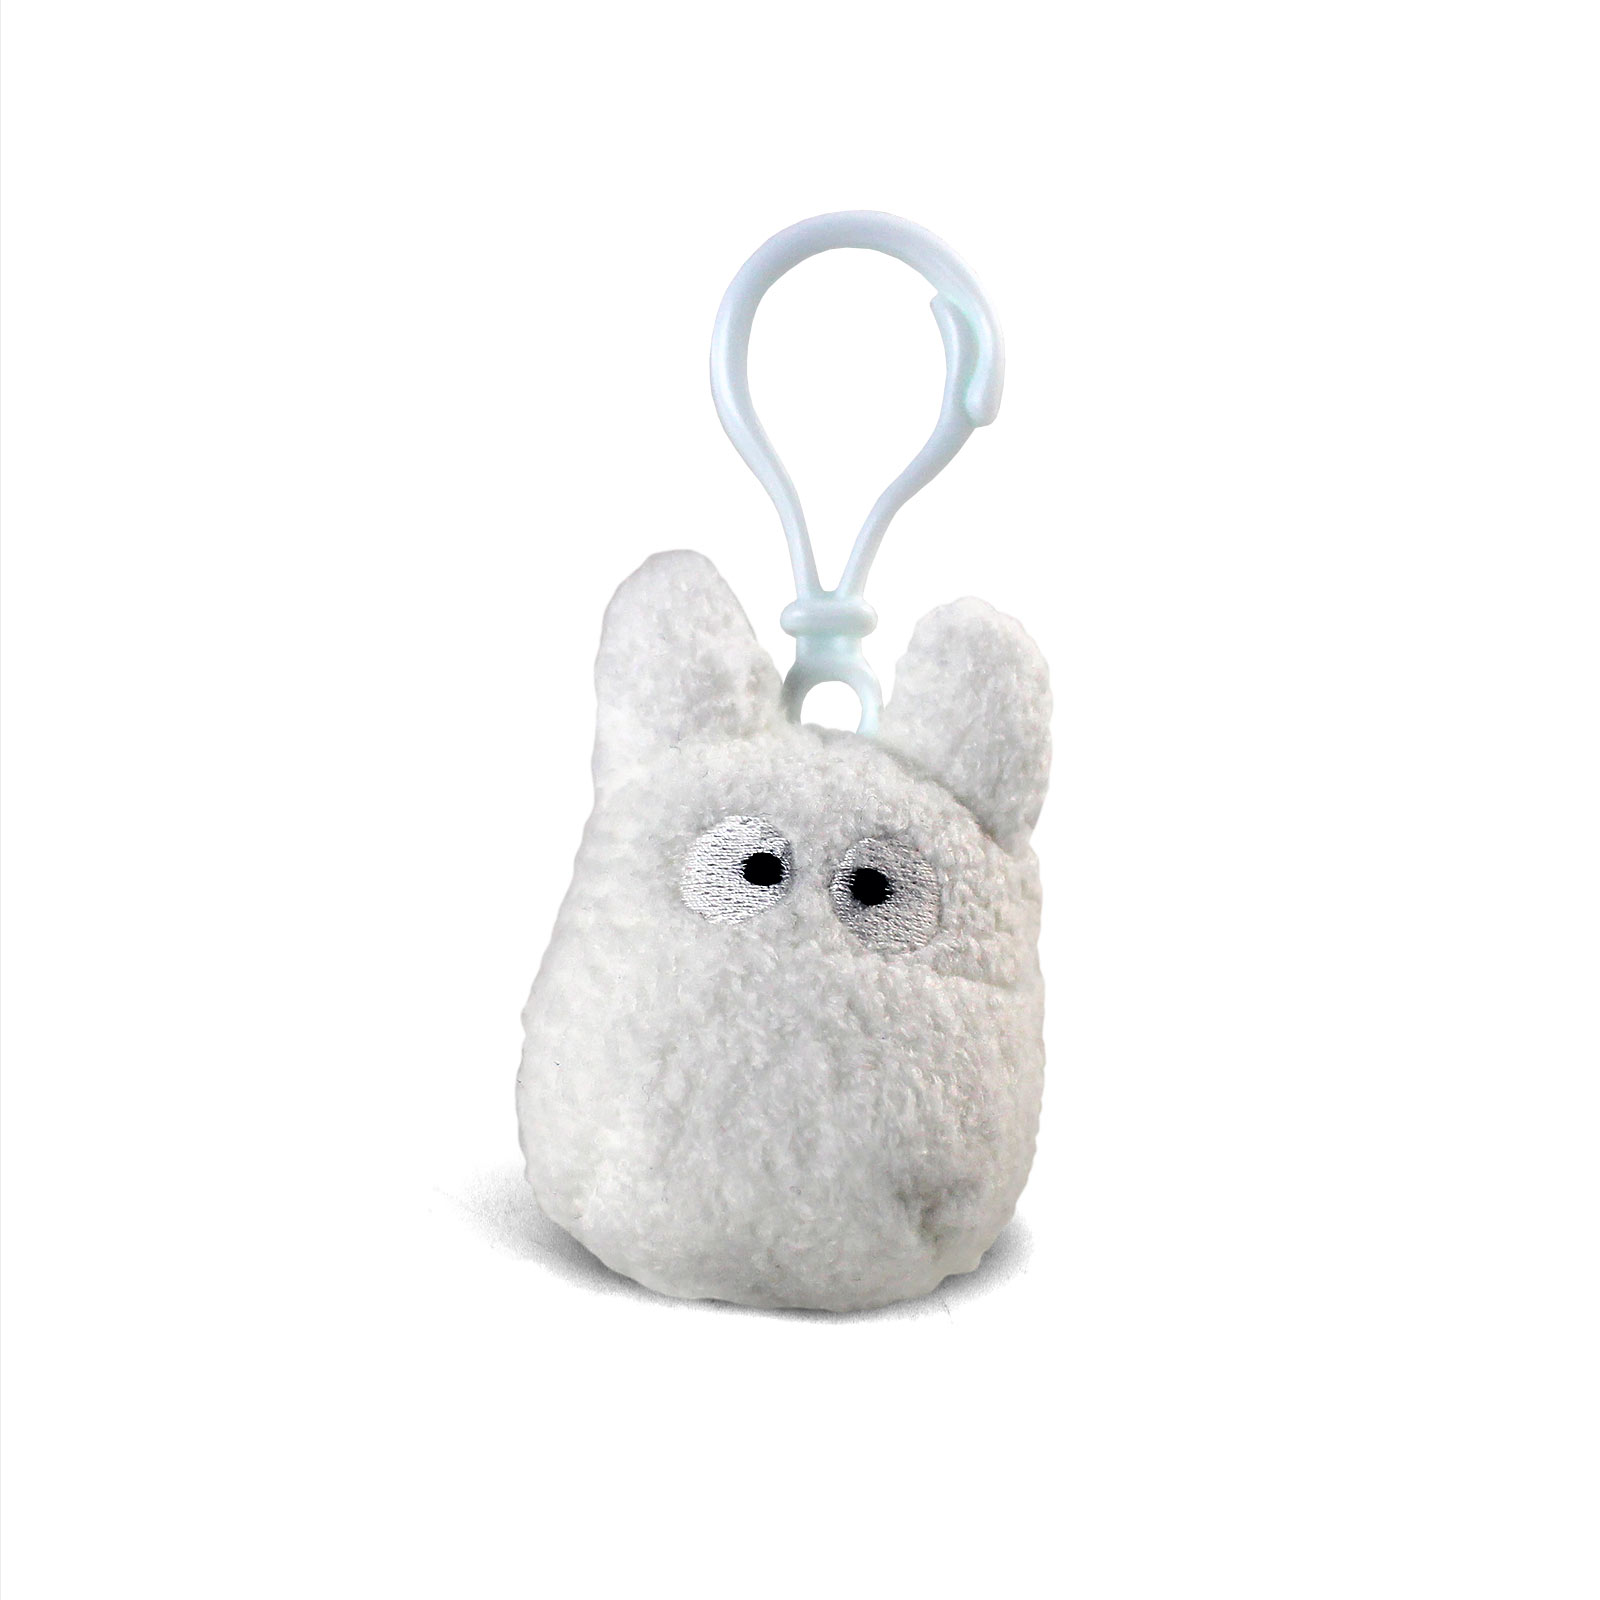 Totoro - Chibi-Totoro Plush Keychain